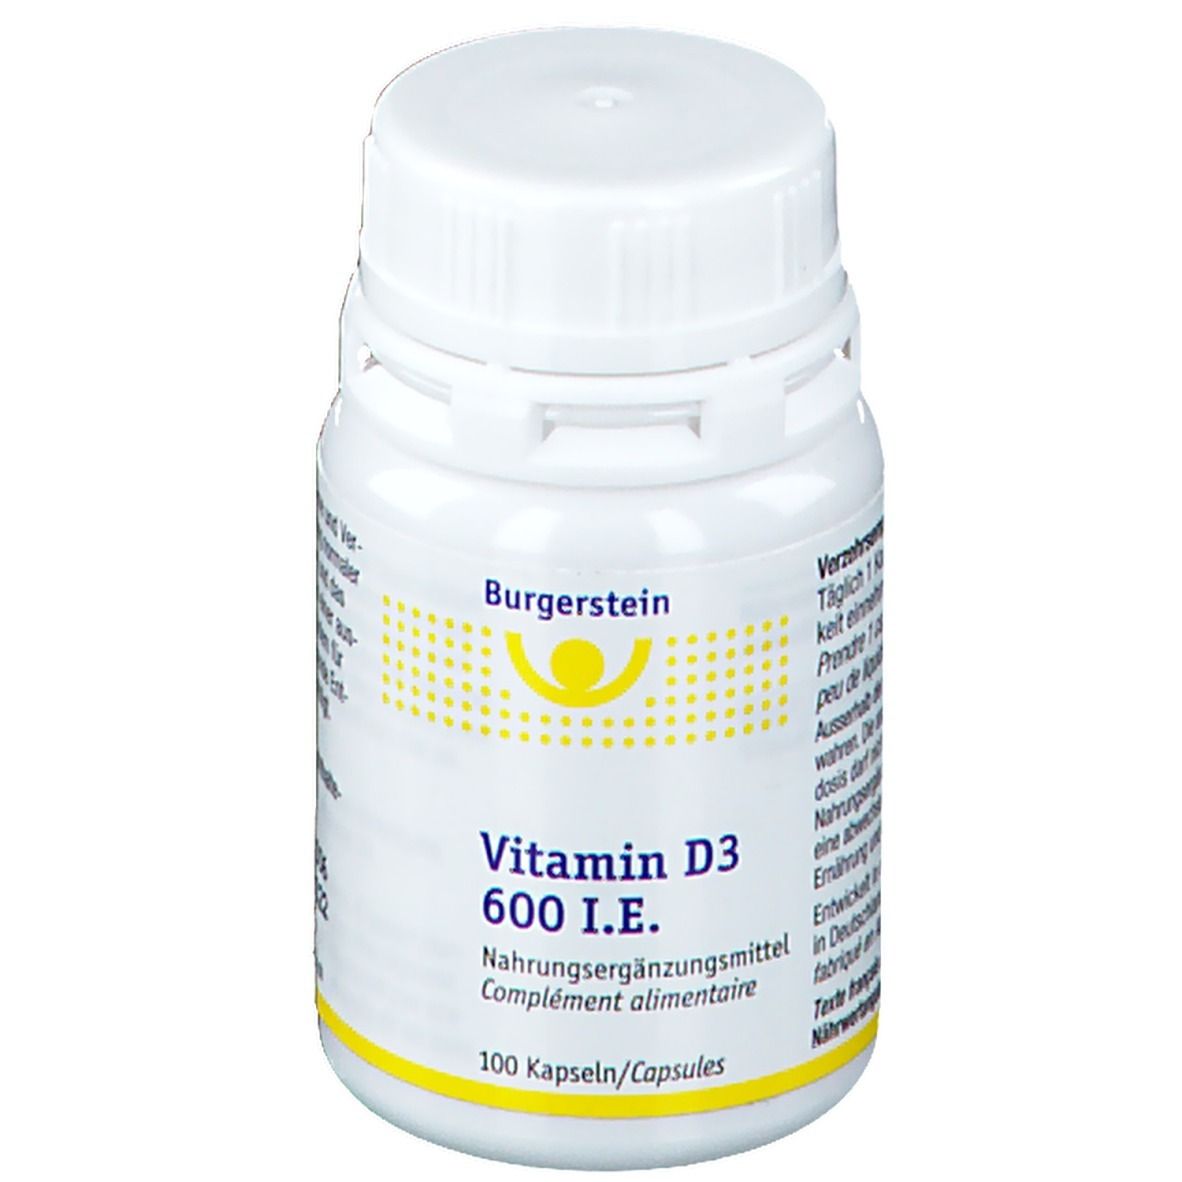 Burgerstein Vitamin D3 600 I.E.